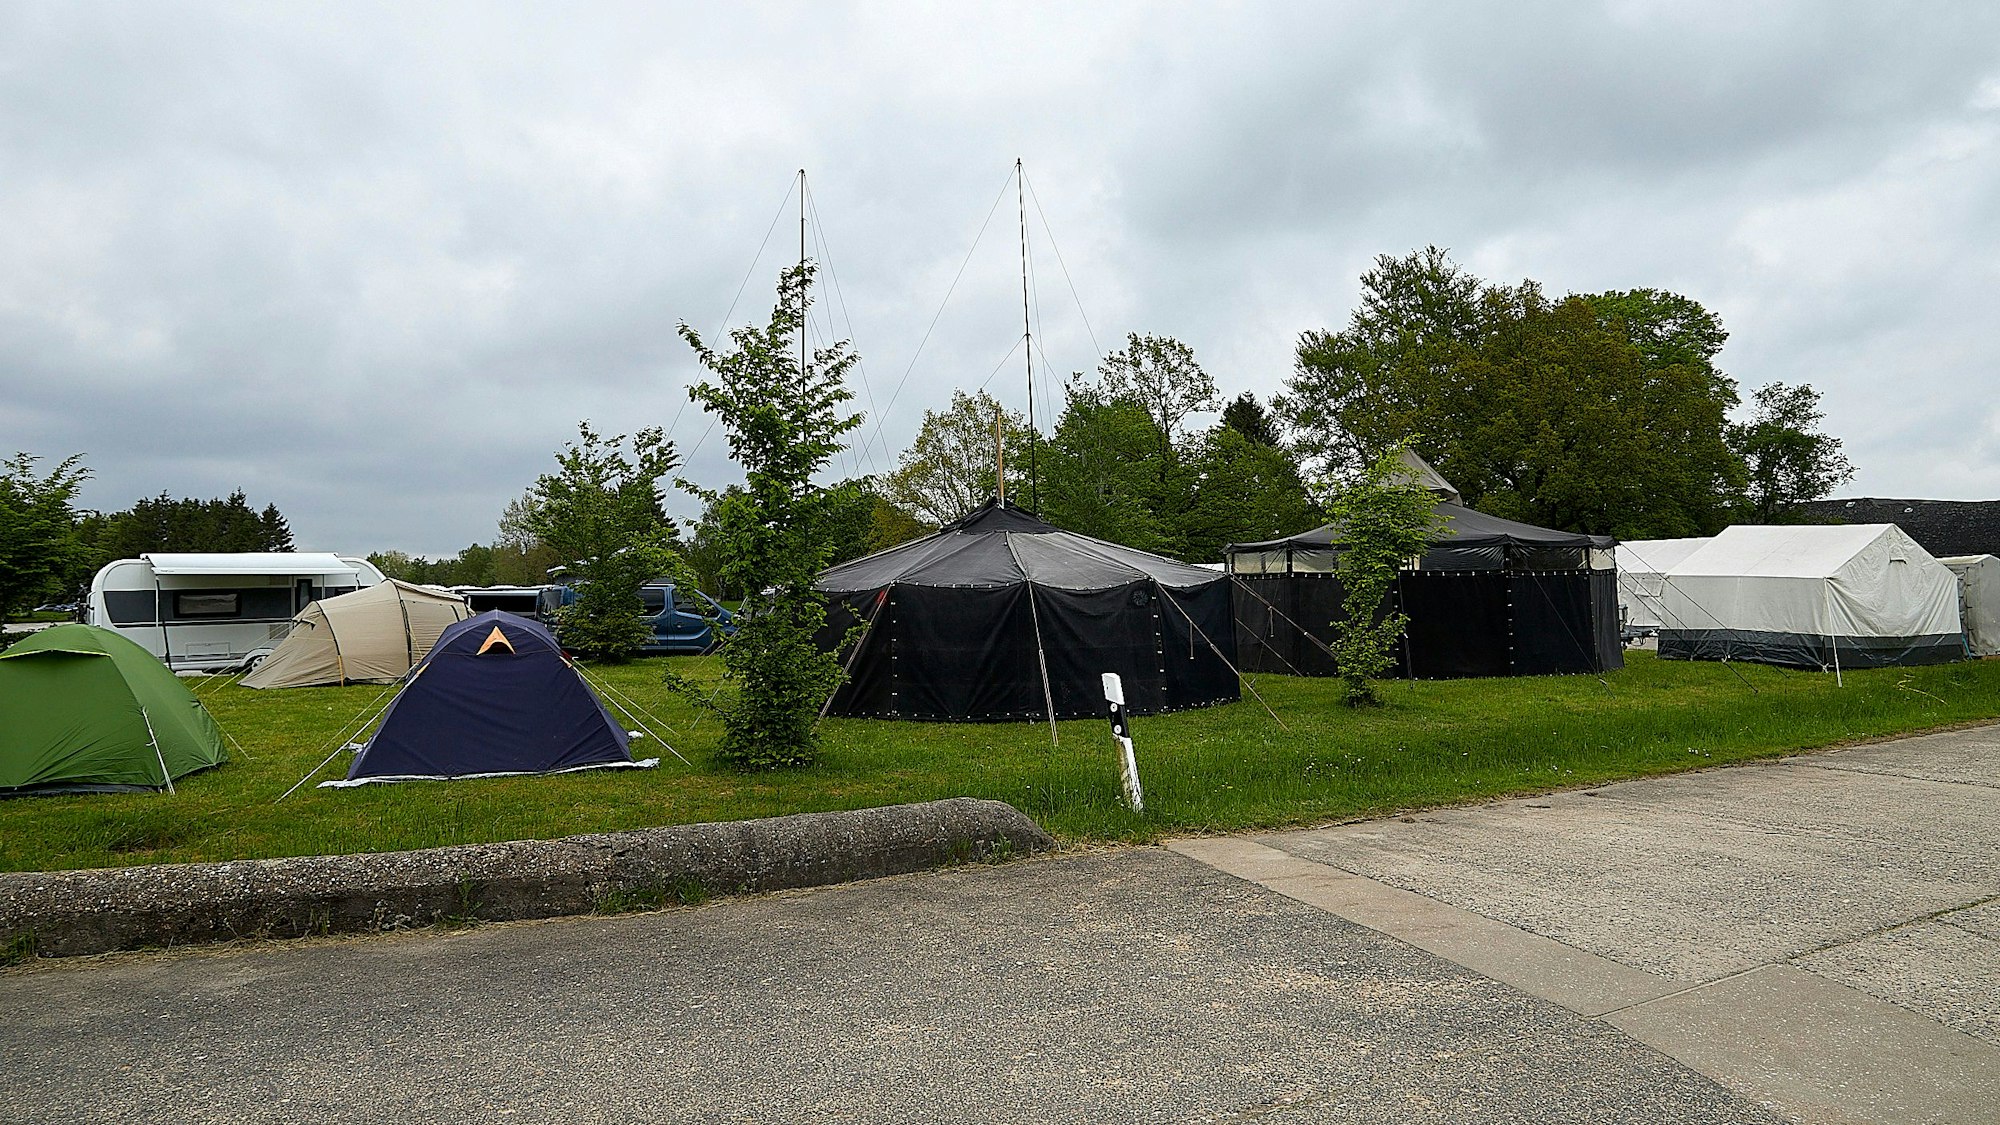 Das Bild zeigt mehrere kleine und drei größere Zelte, die auf einer Wiese aufgebaut sind.